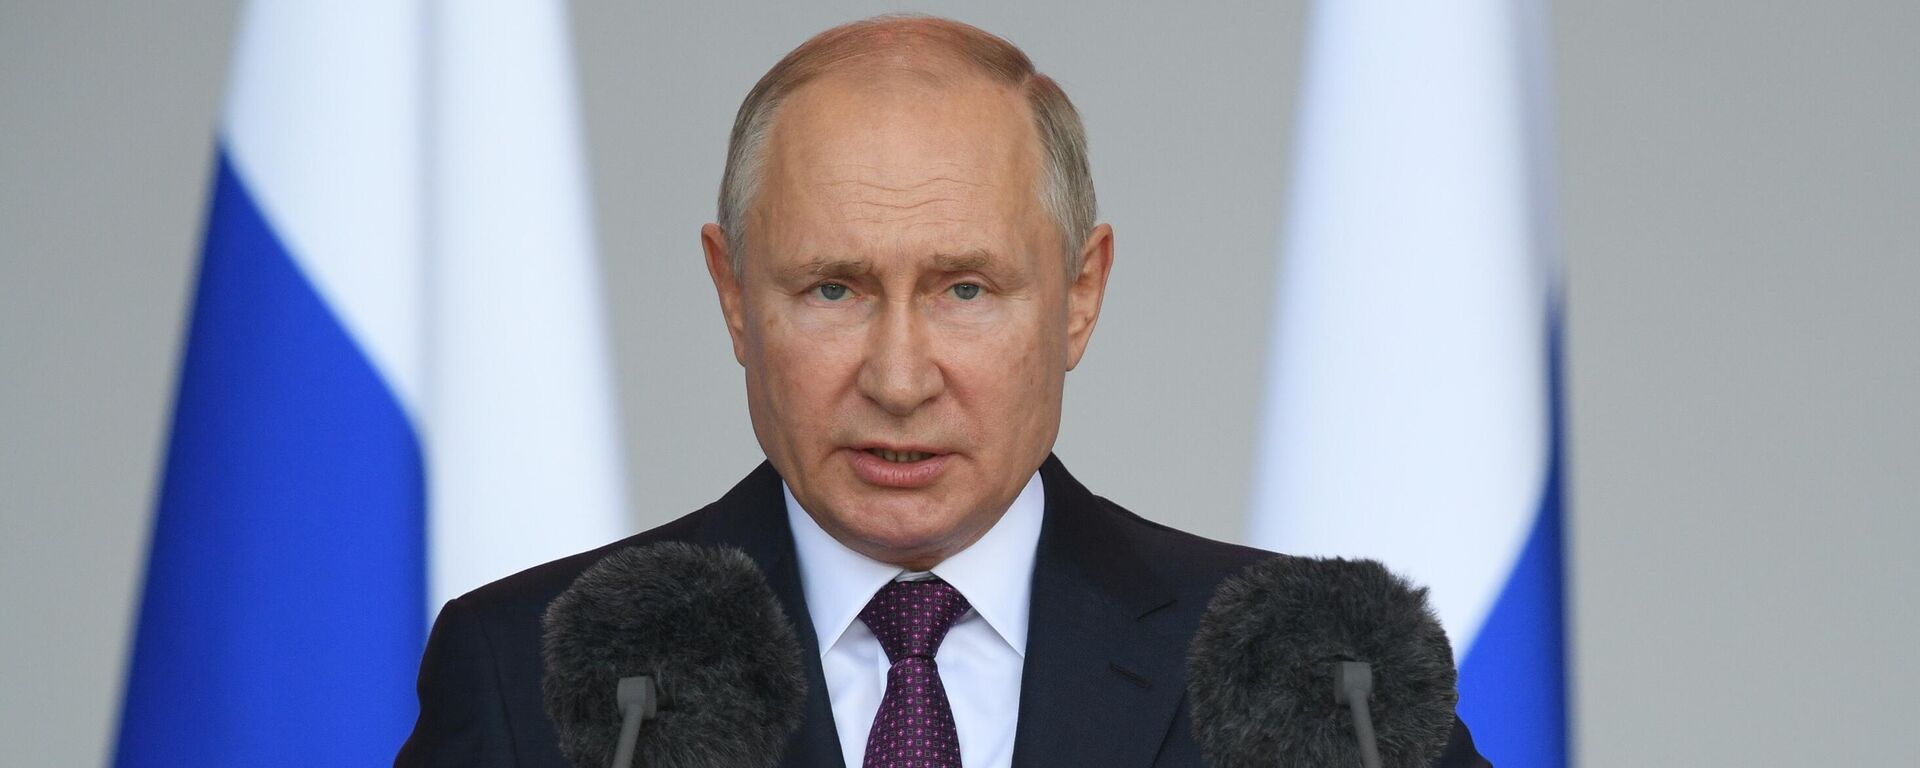 Президент РФ Владимир Путин - Sputnik Таджикистан, 1920, 13.09.2021